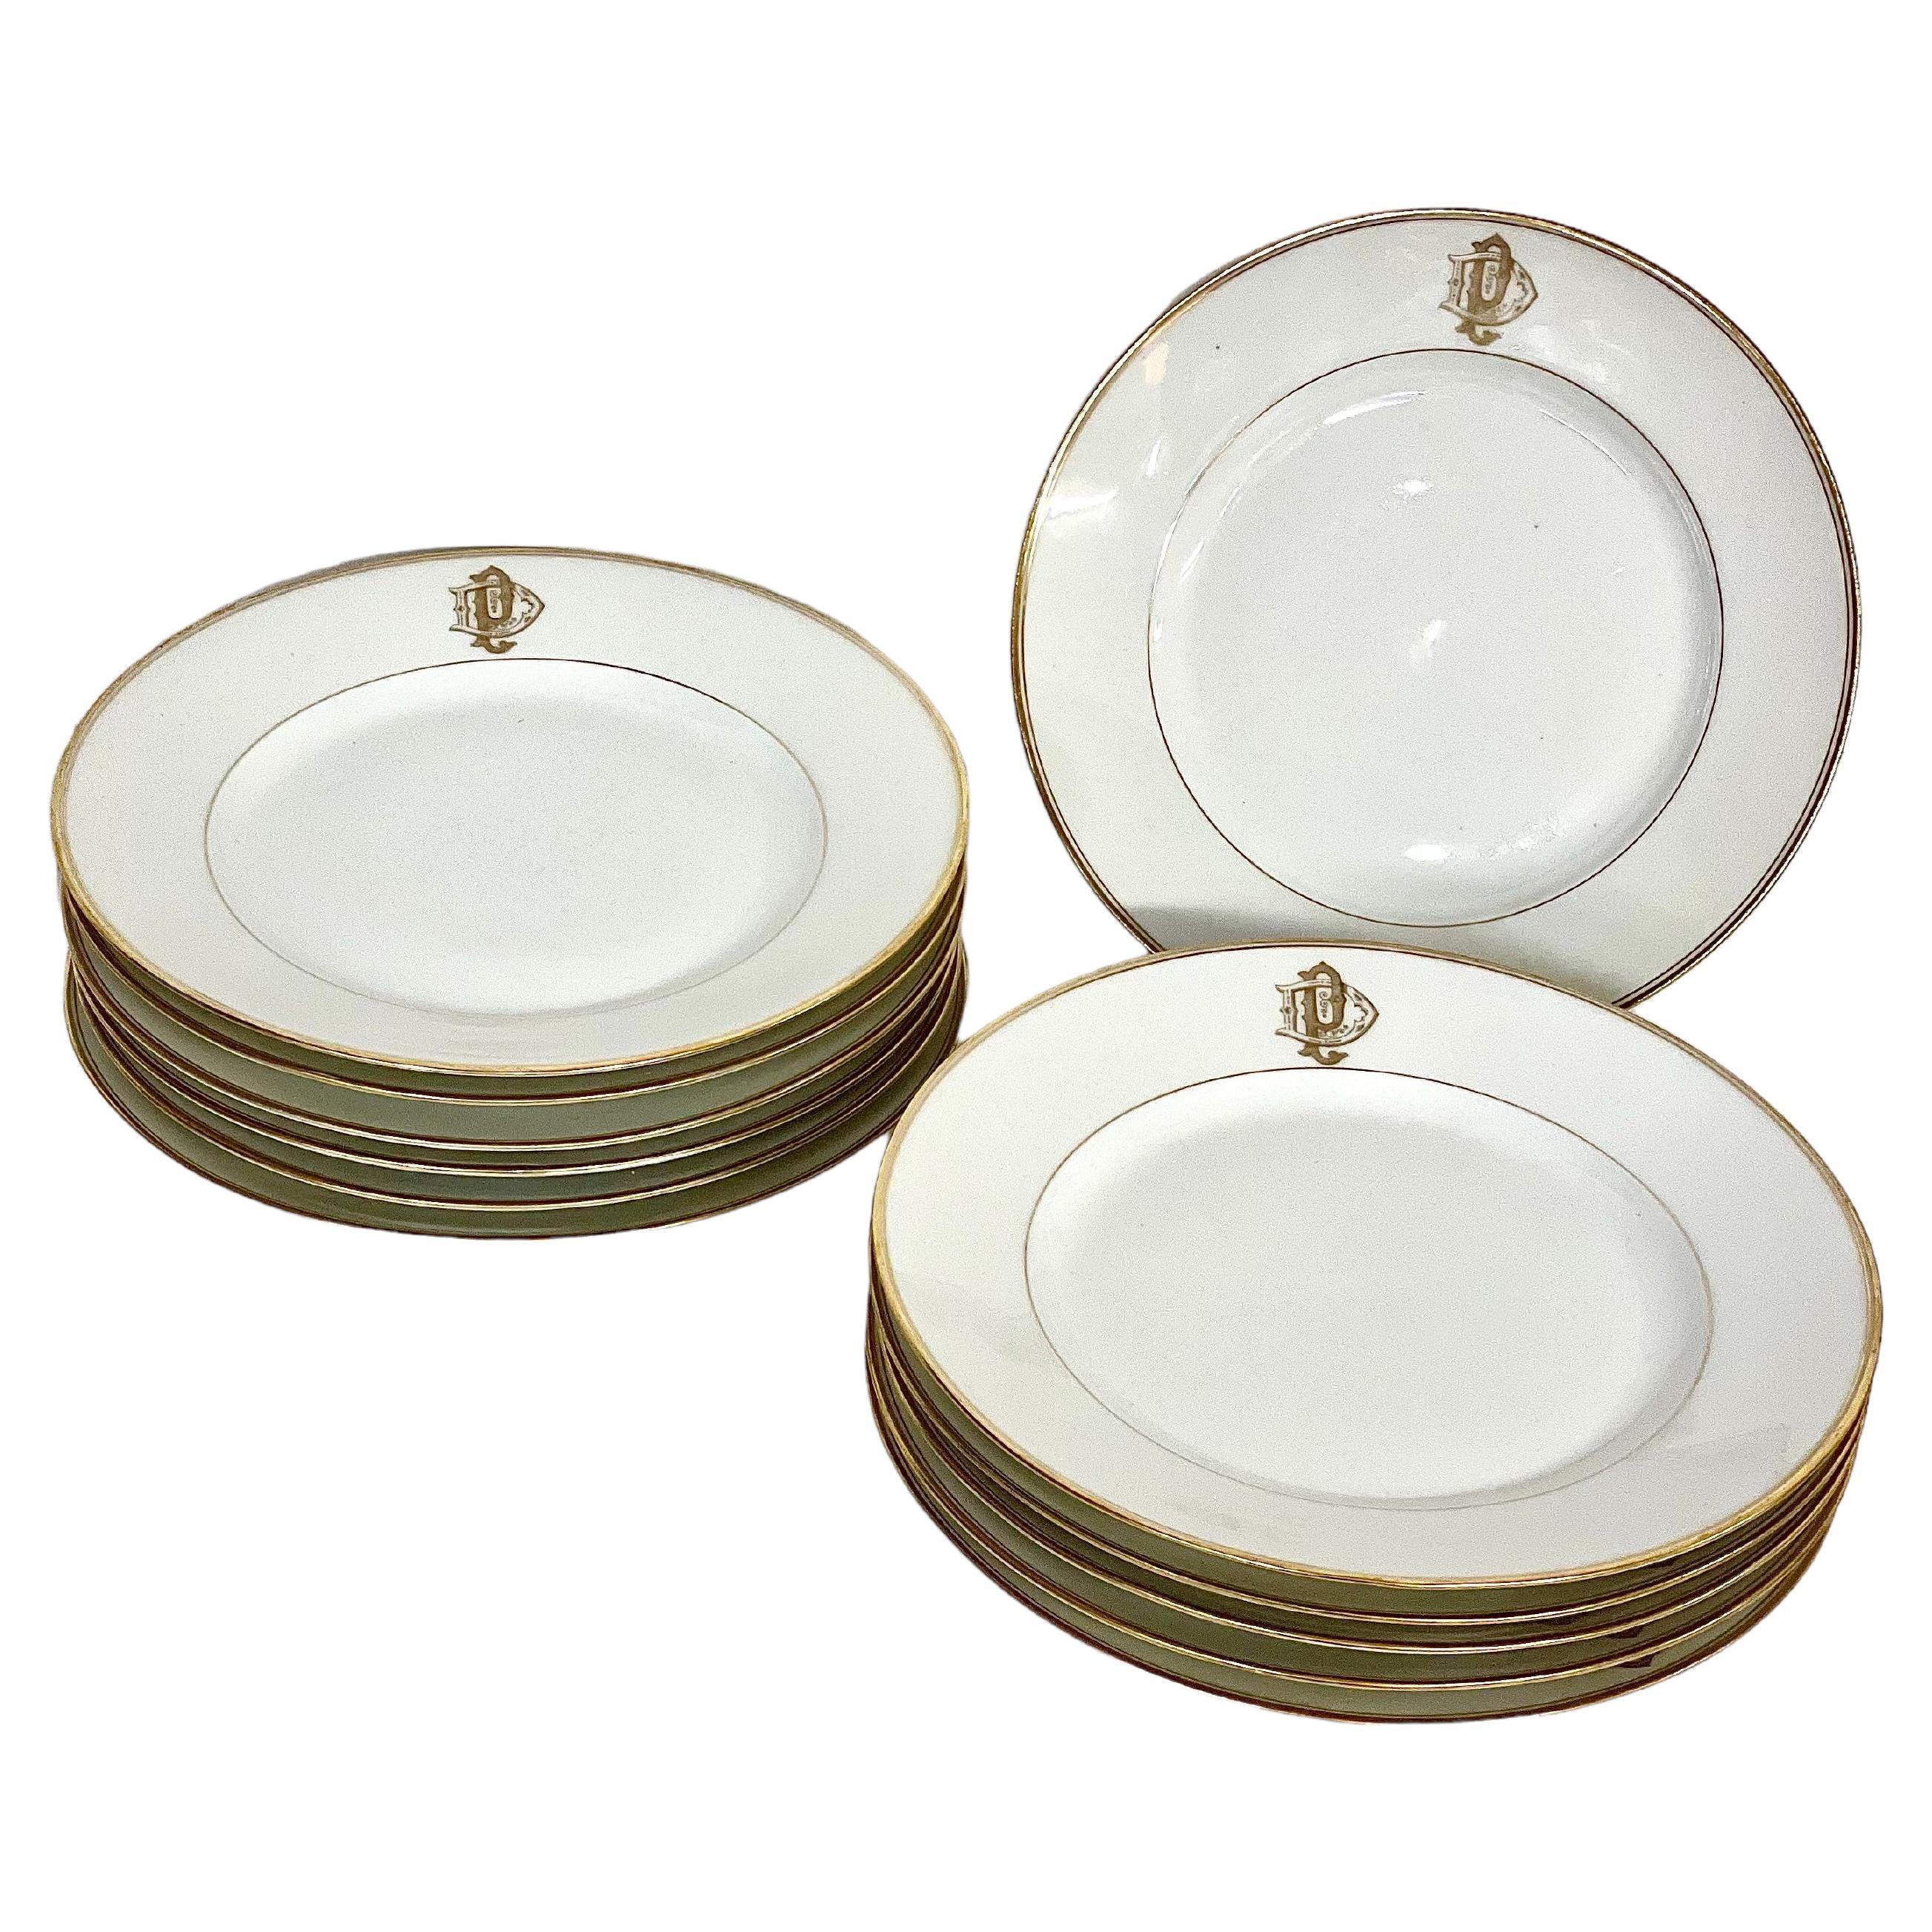 Juego de 12 platos llanos de porcelana de Limoges con bordes dorados y monograma